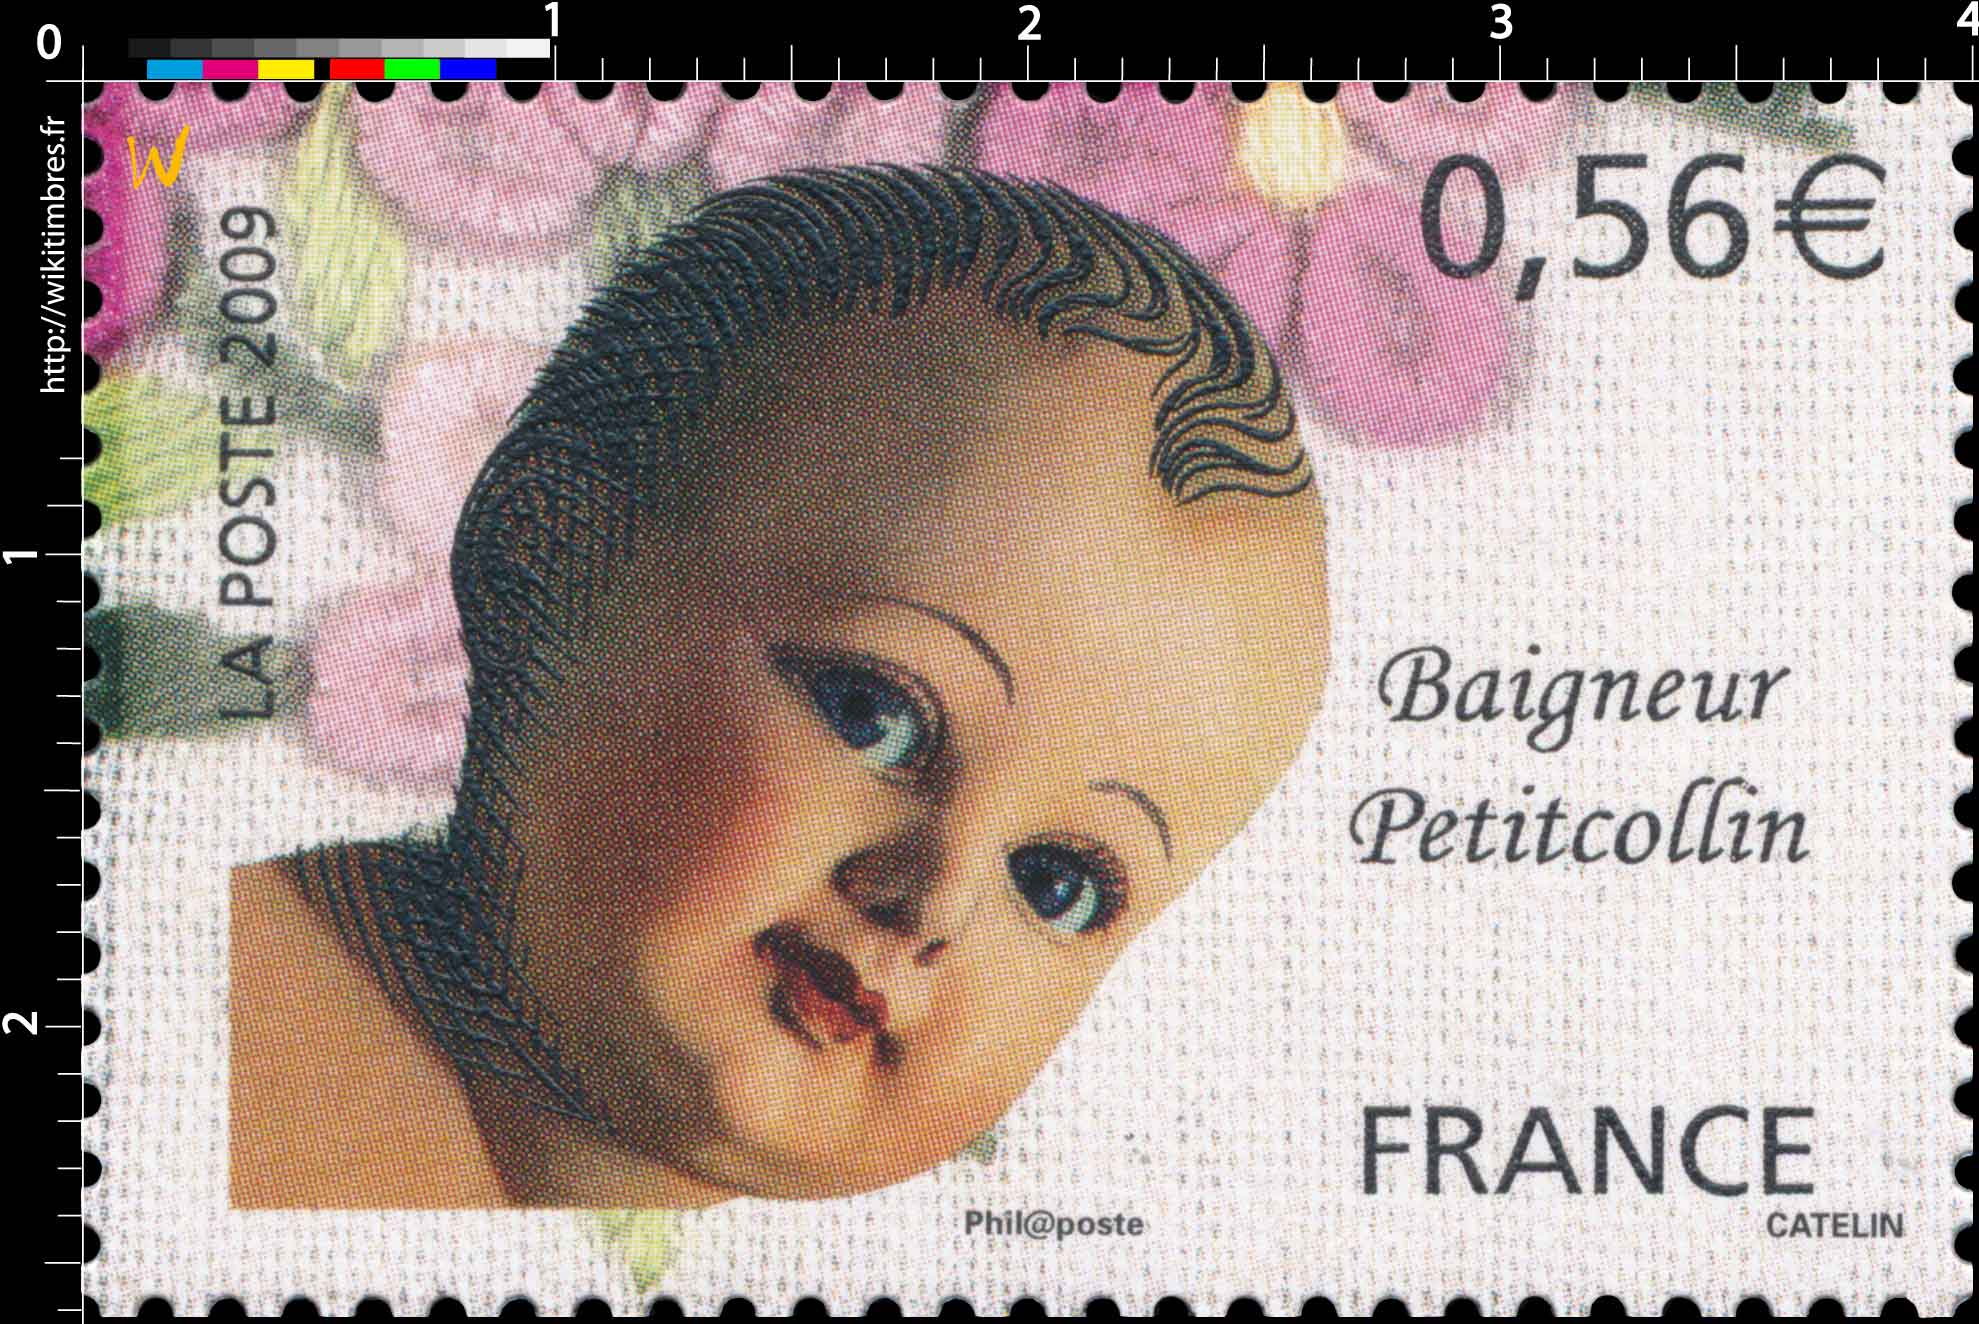 2009 Baigneur Petitcollin